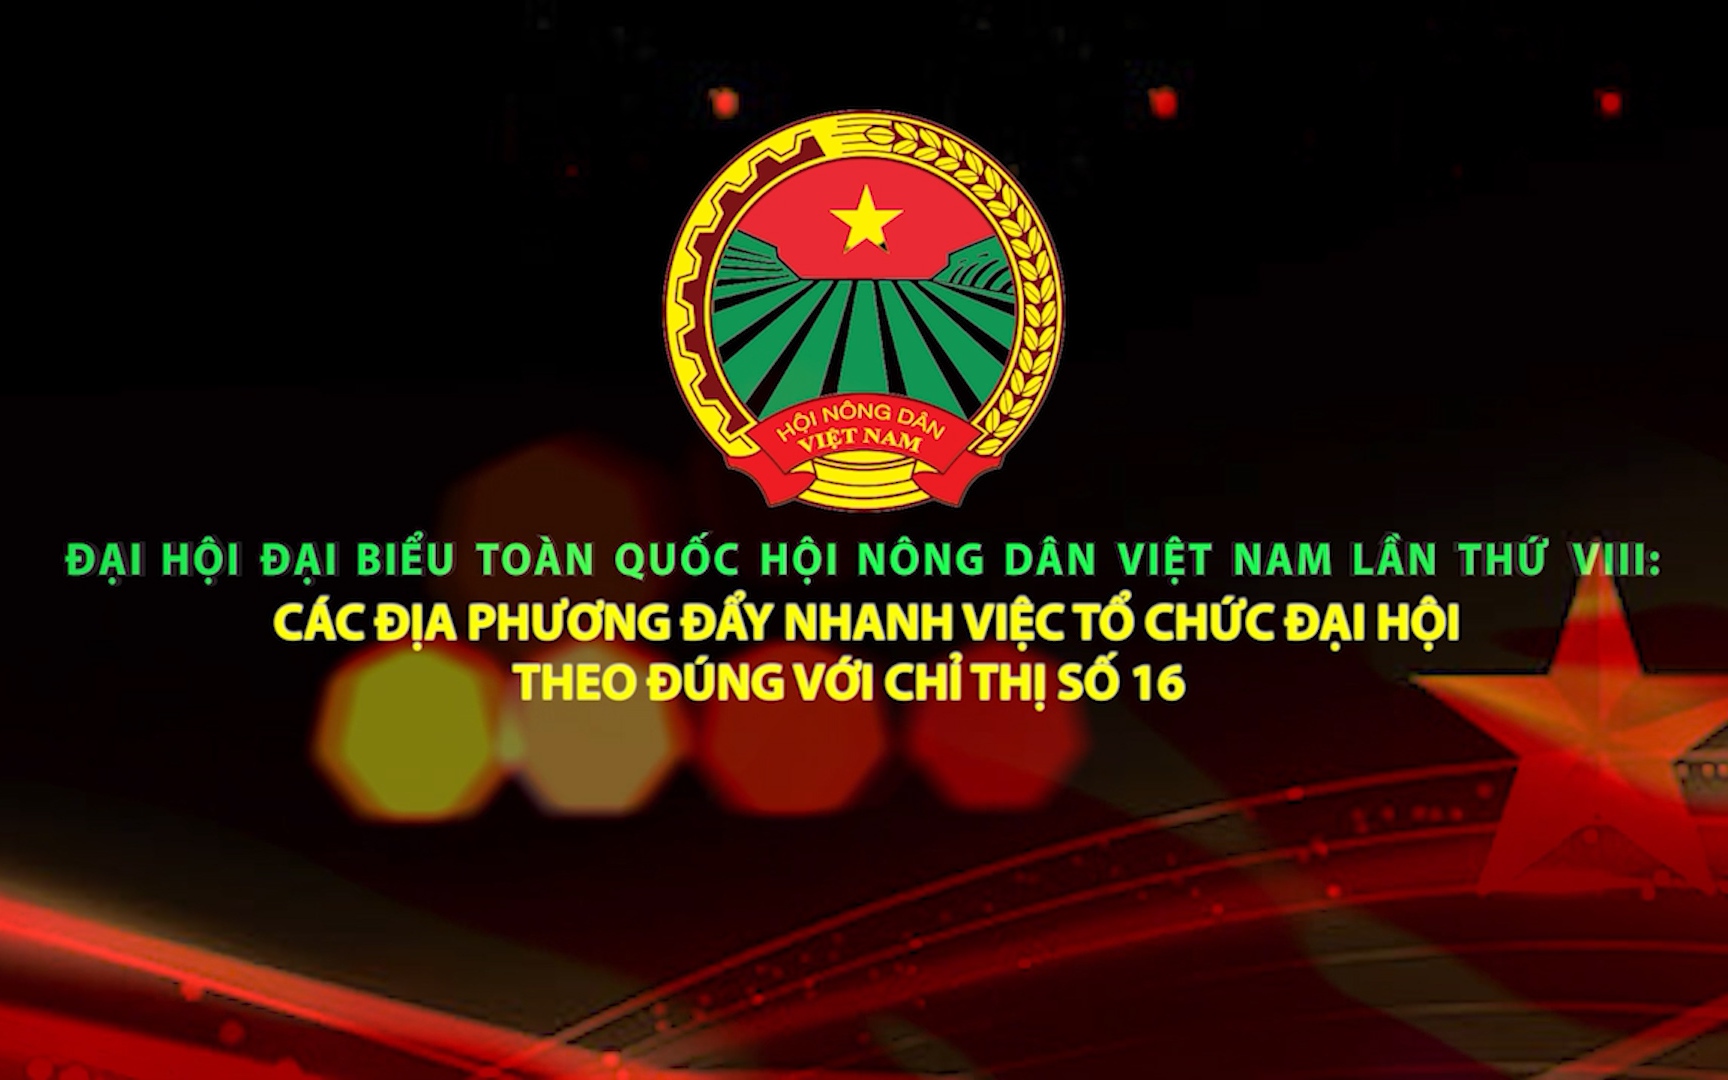 Đại hội đại biểu toàn quốc Hội Nông dân Việt Nam lần thứ VIII: Các địa phương đẩy nhanh việc tổ chức Đại hội